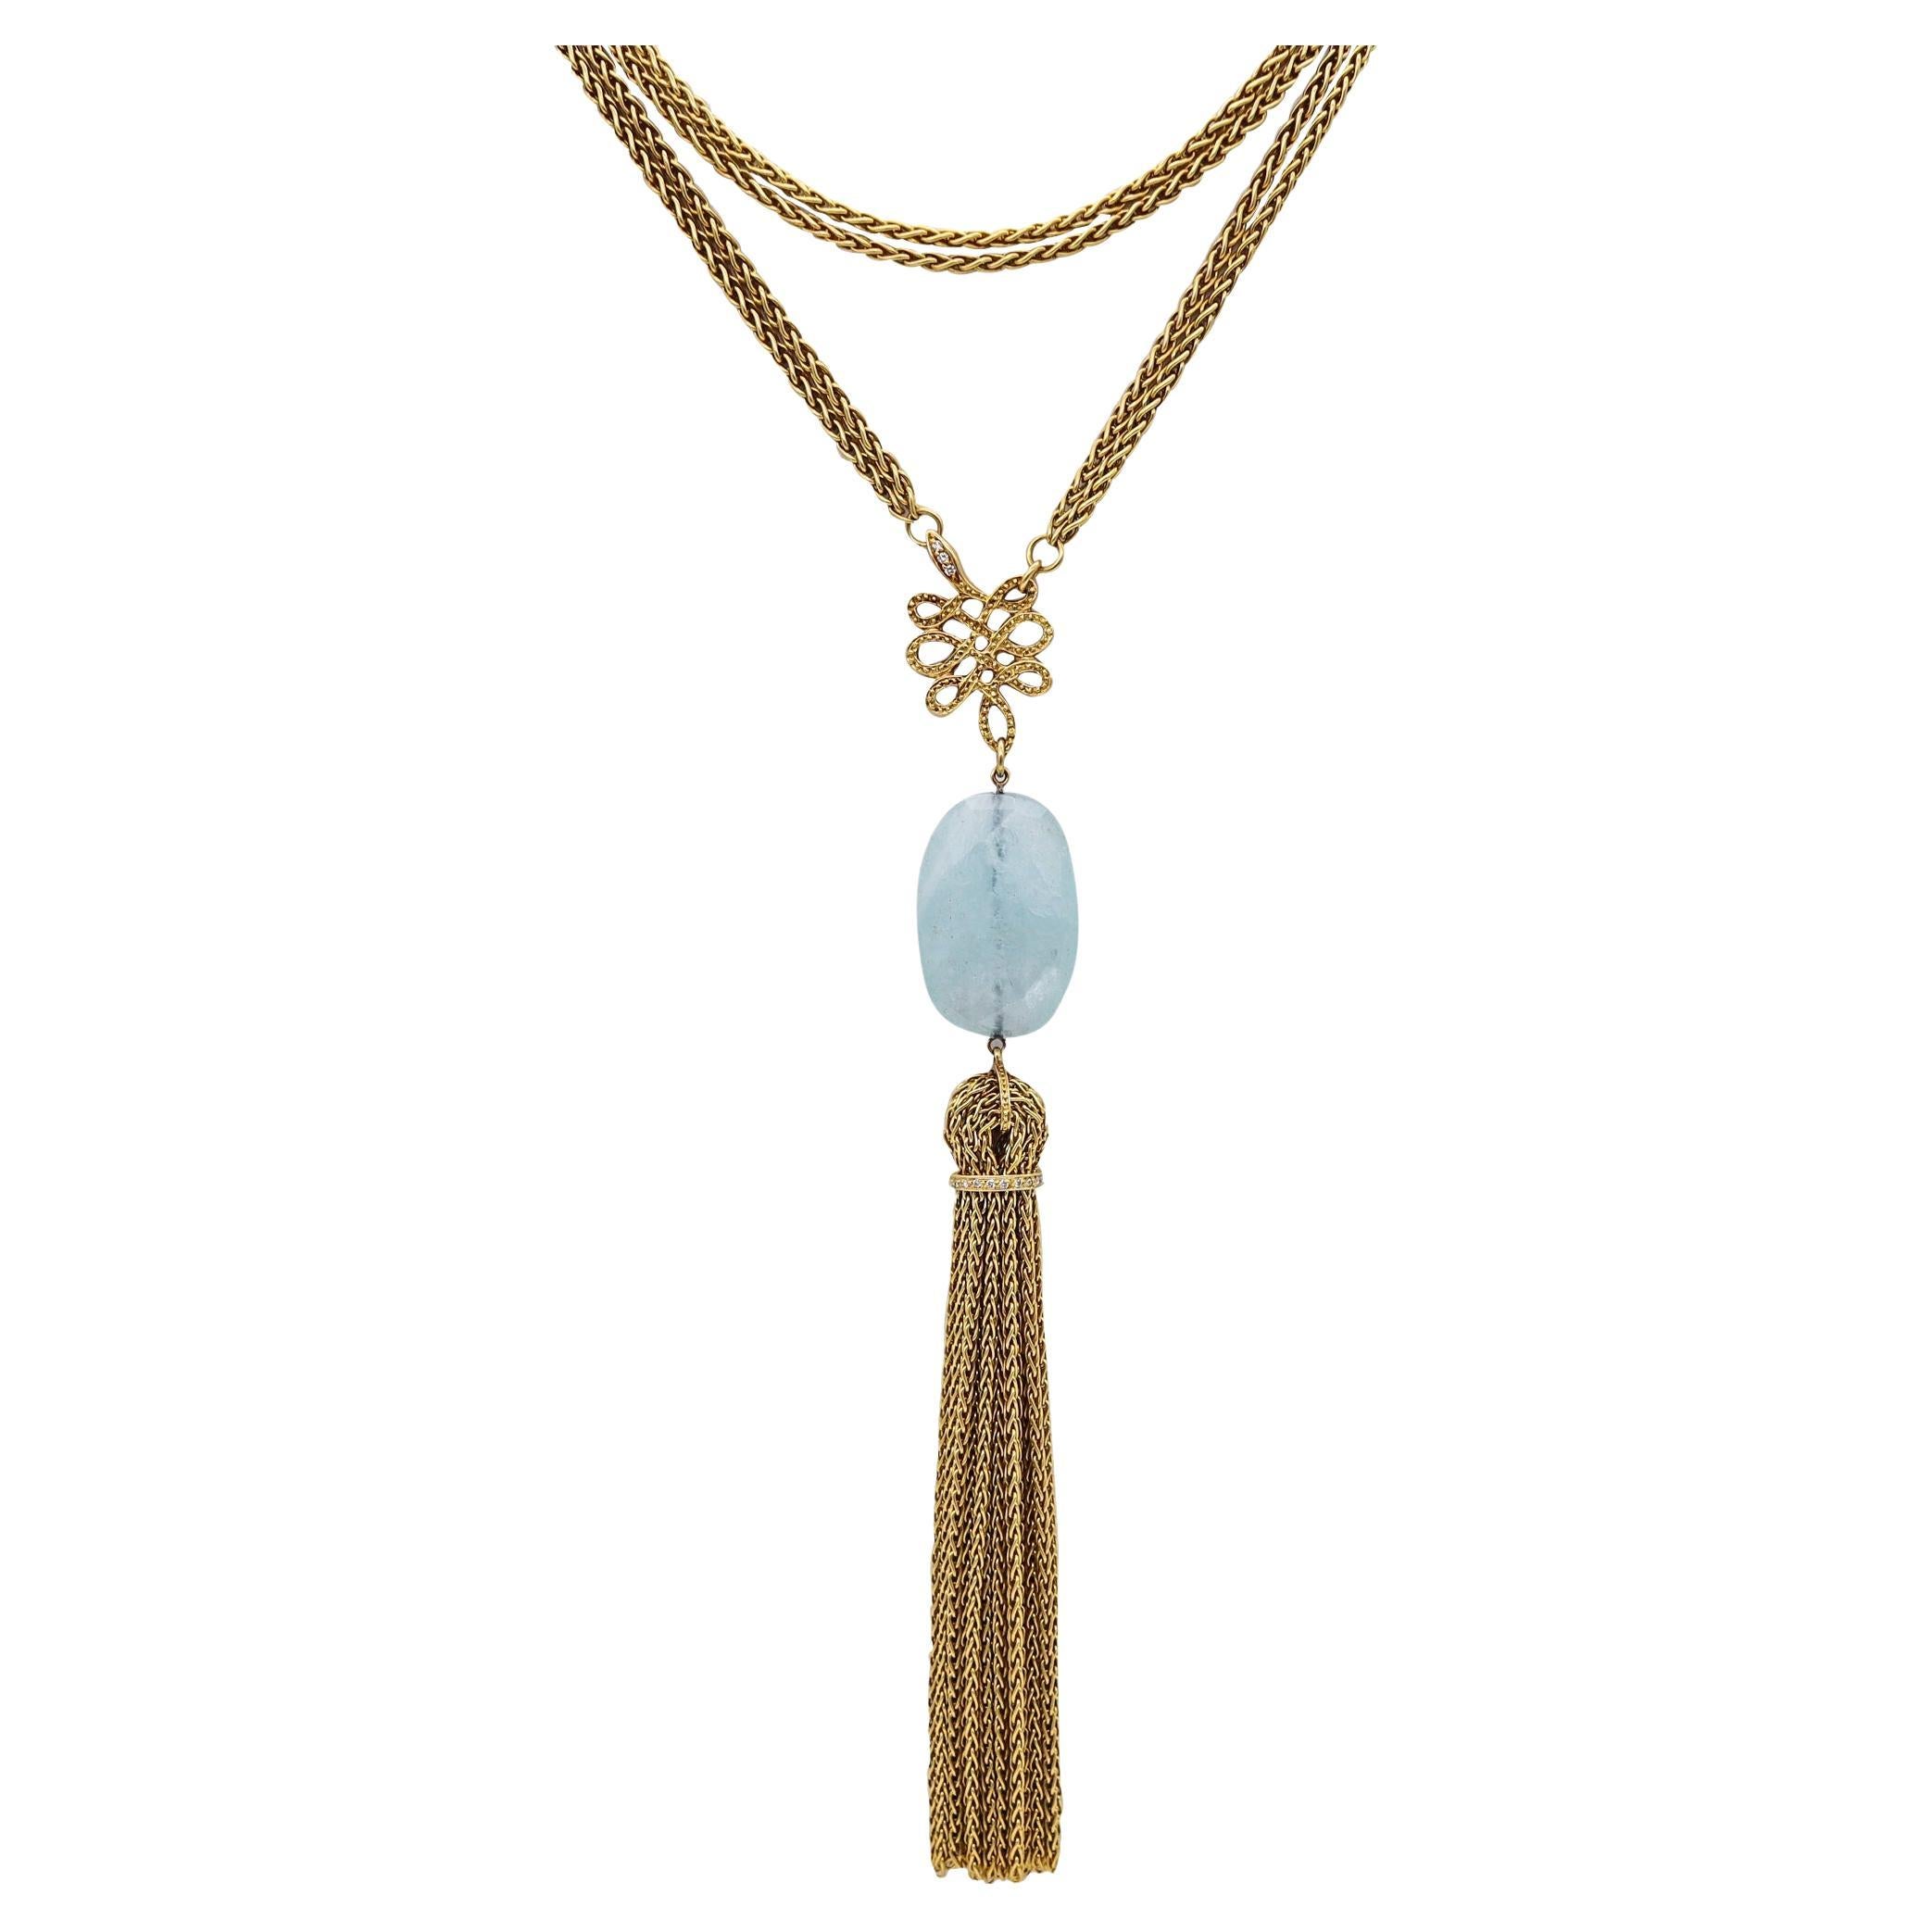 H Stern Diane von Furstenberg Long Necklace 18 Kt Gold with 22.45 Cts Aquamarine